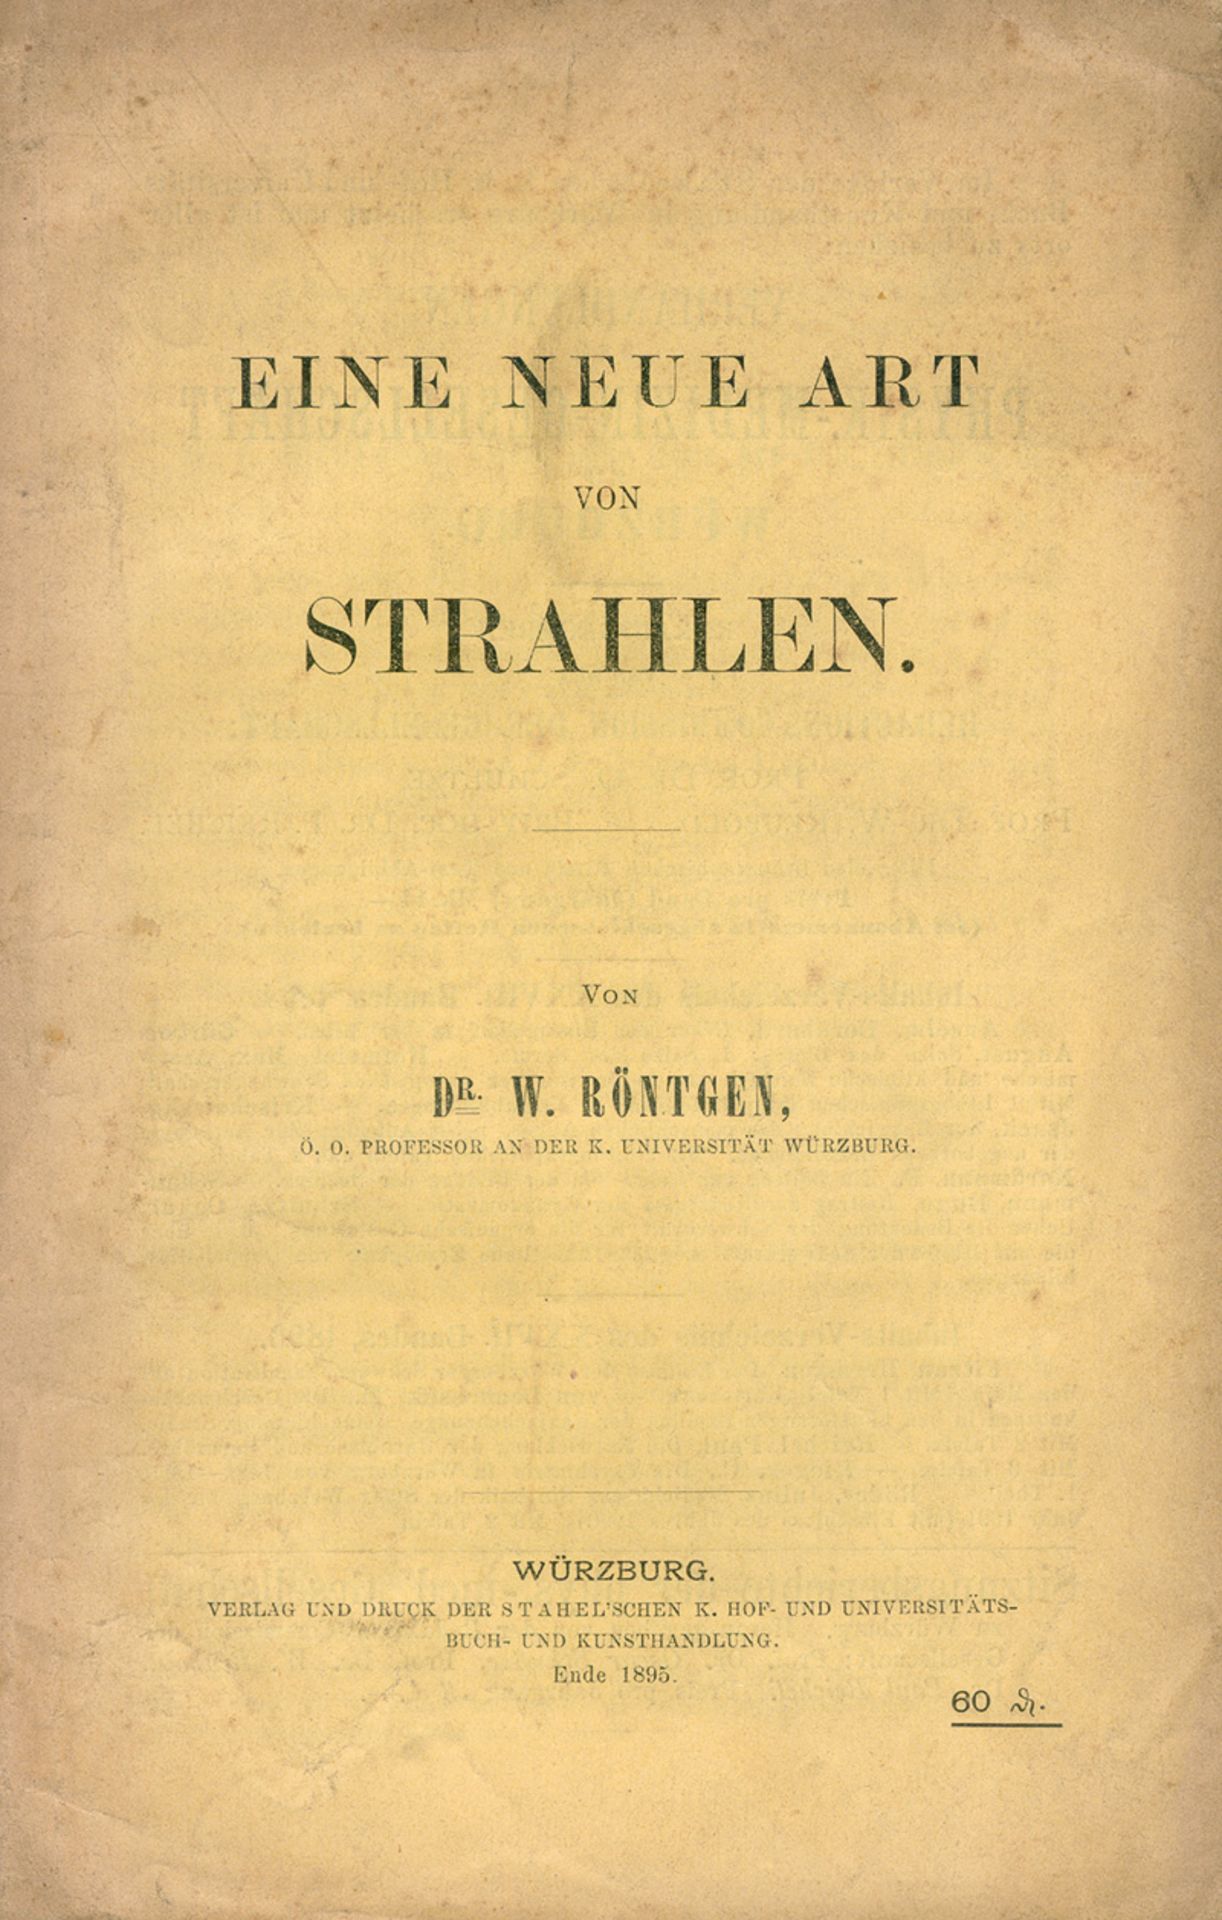 Röntgen, Wilhelm Konrad: Ueber eine neue Art von Strahlen - Image 2 of 2